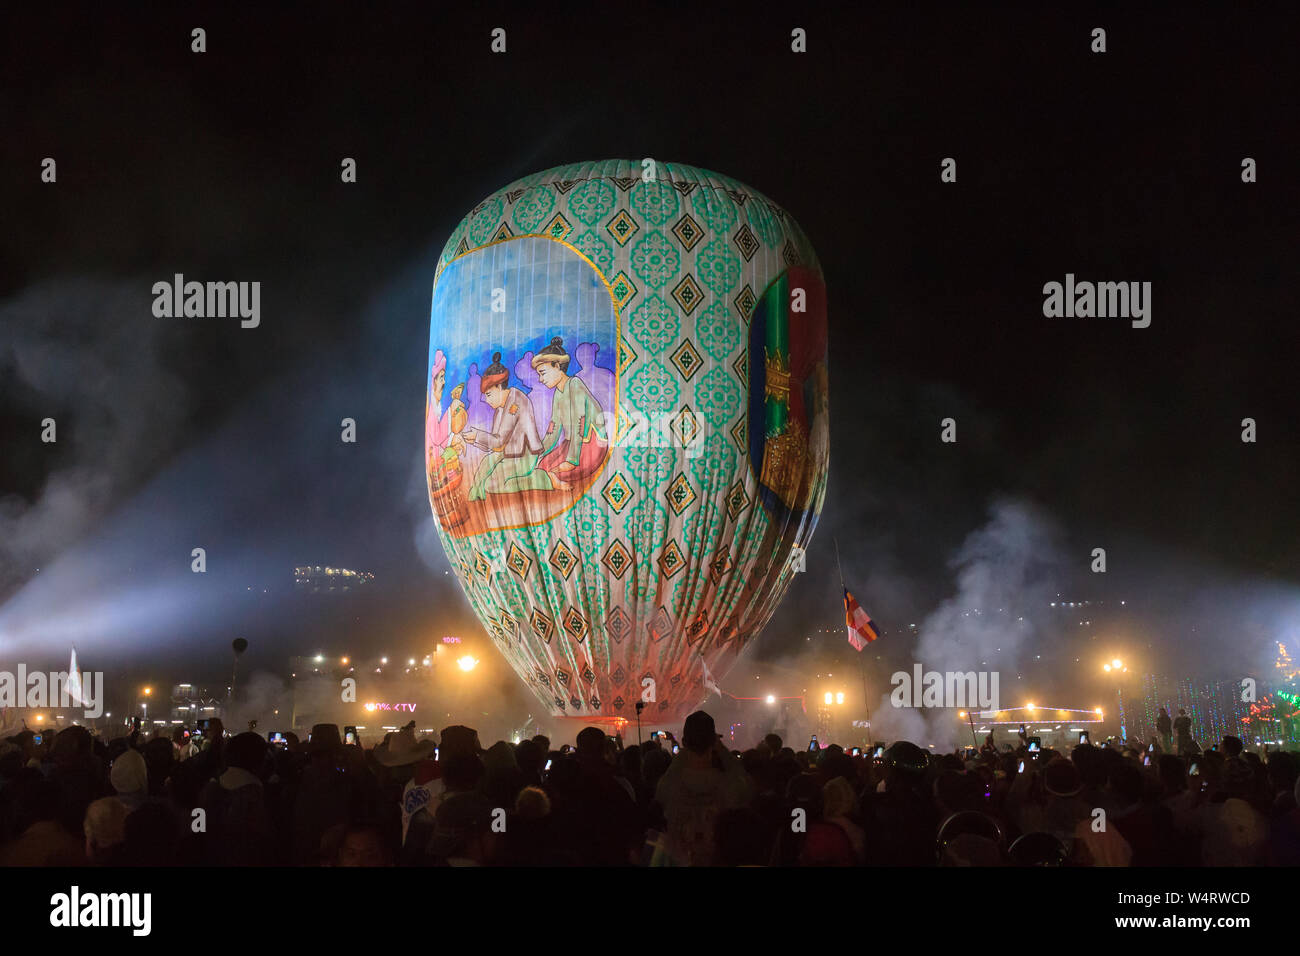 Taunngyi, Myanmar, 23. November 2018 - Der Hot Air Balloon Festival in Shanghai ist ein 4-Tages Festival feierte jährlich im November. Zehntausende Stockfoto